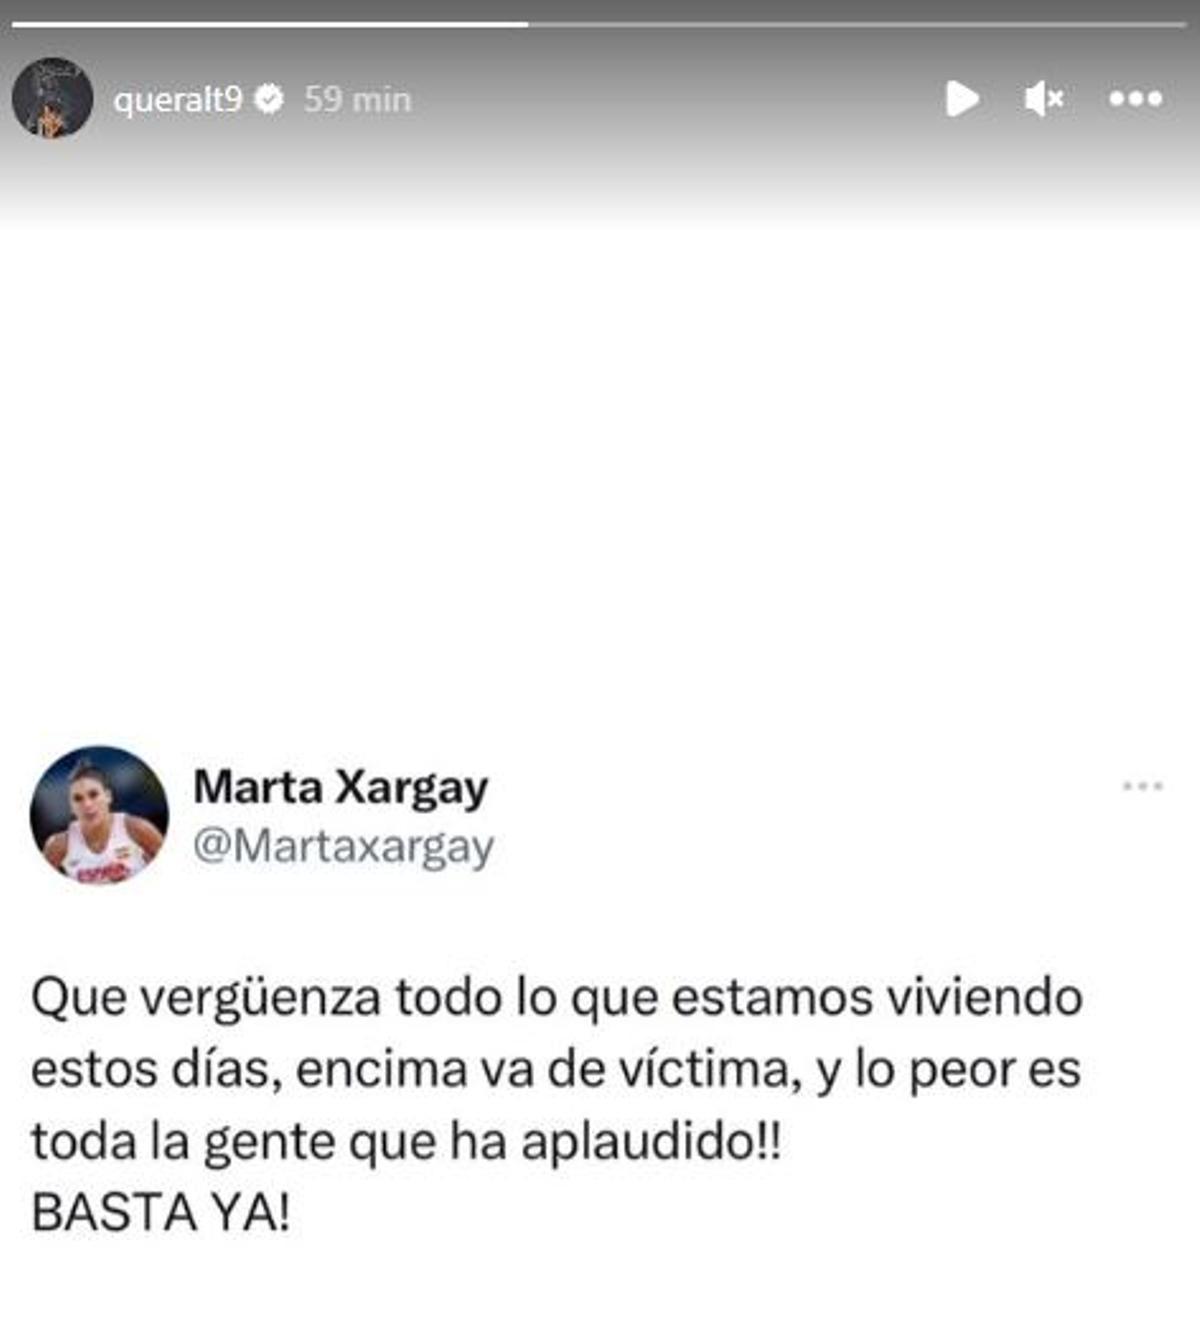 El post de Marta Xargay que comparte Casas en su estado de Instagram